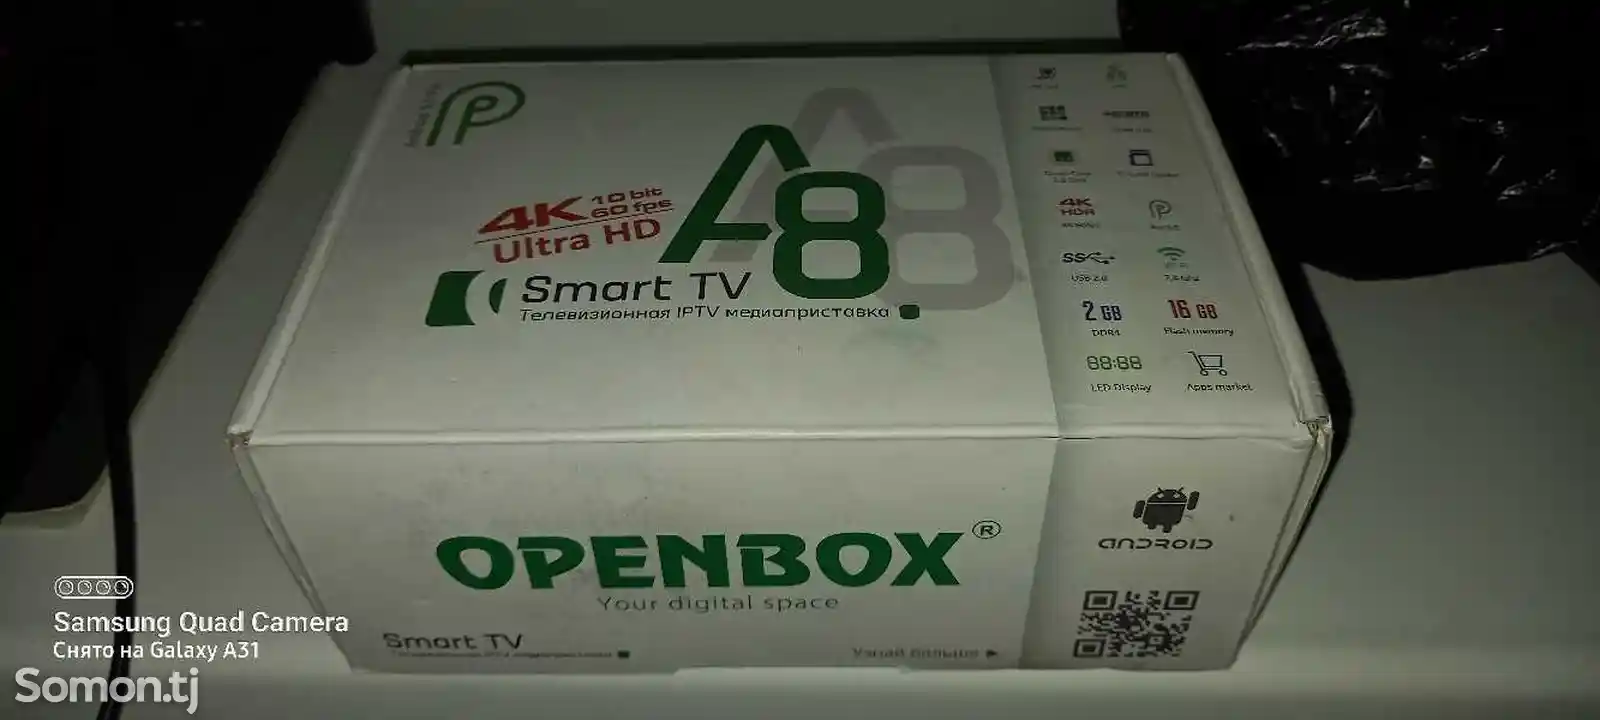 IPTV UHD-приставка Openbox-2